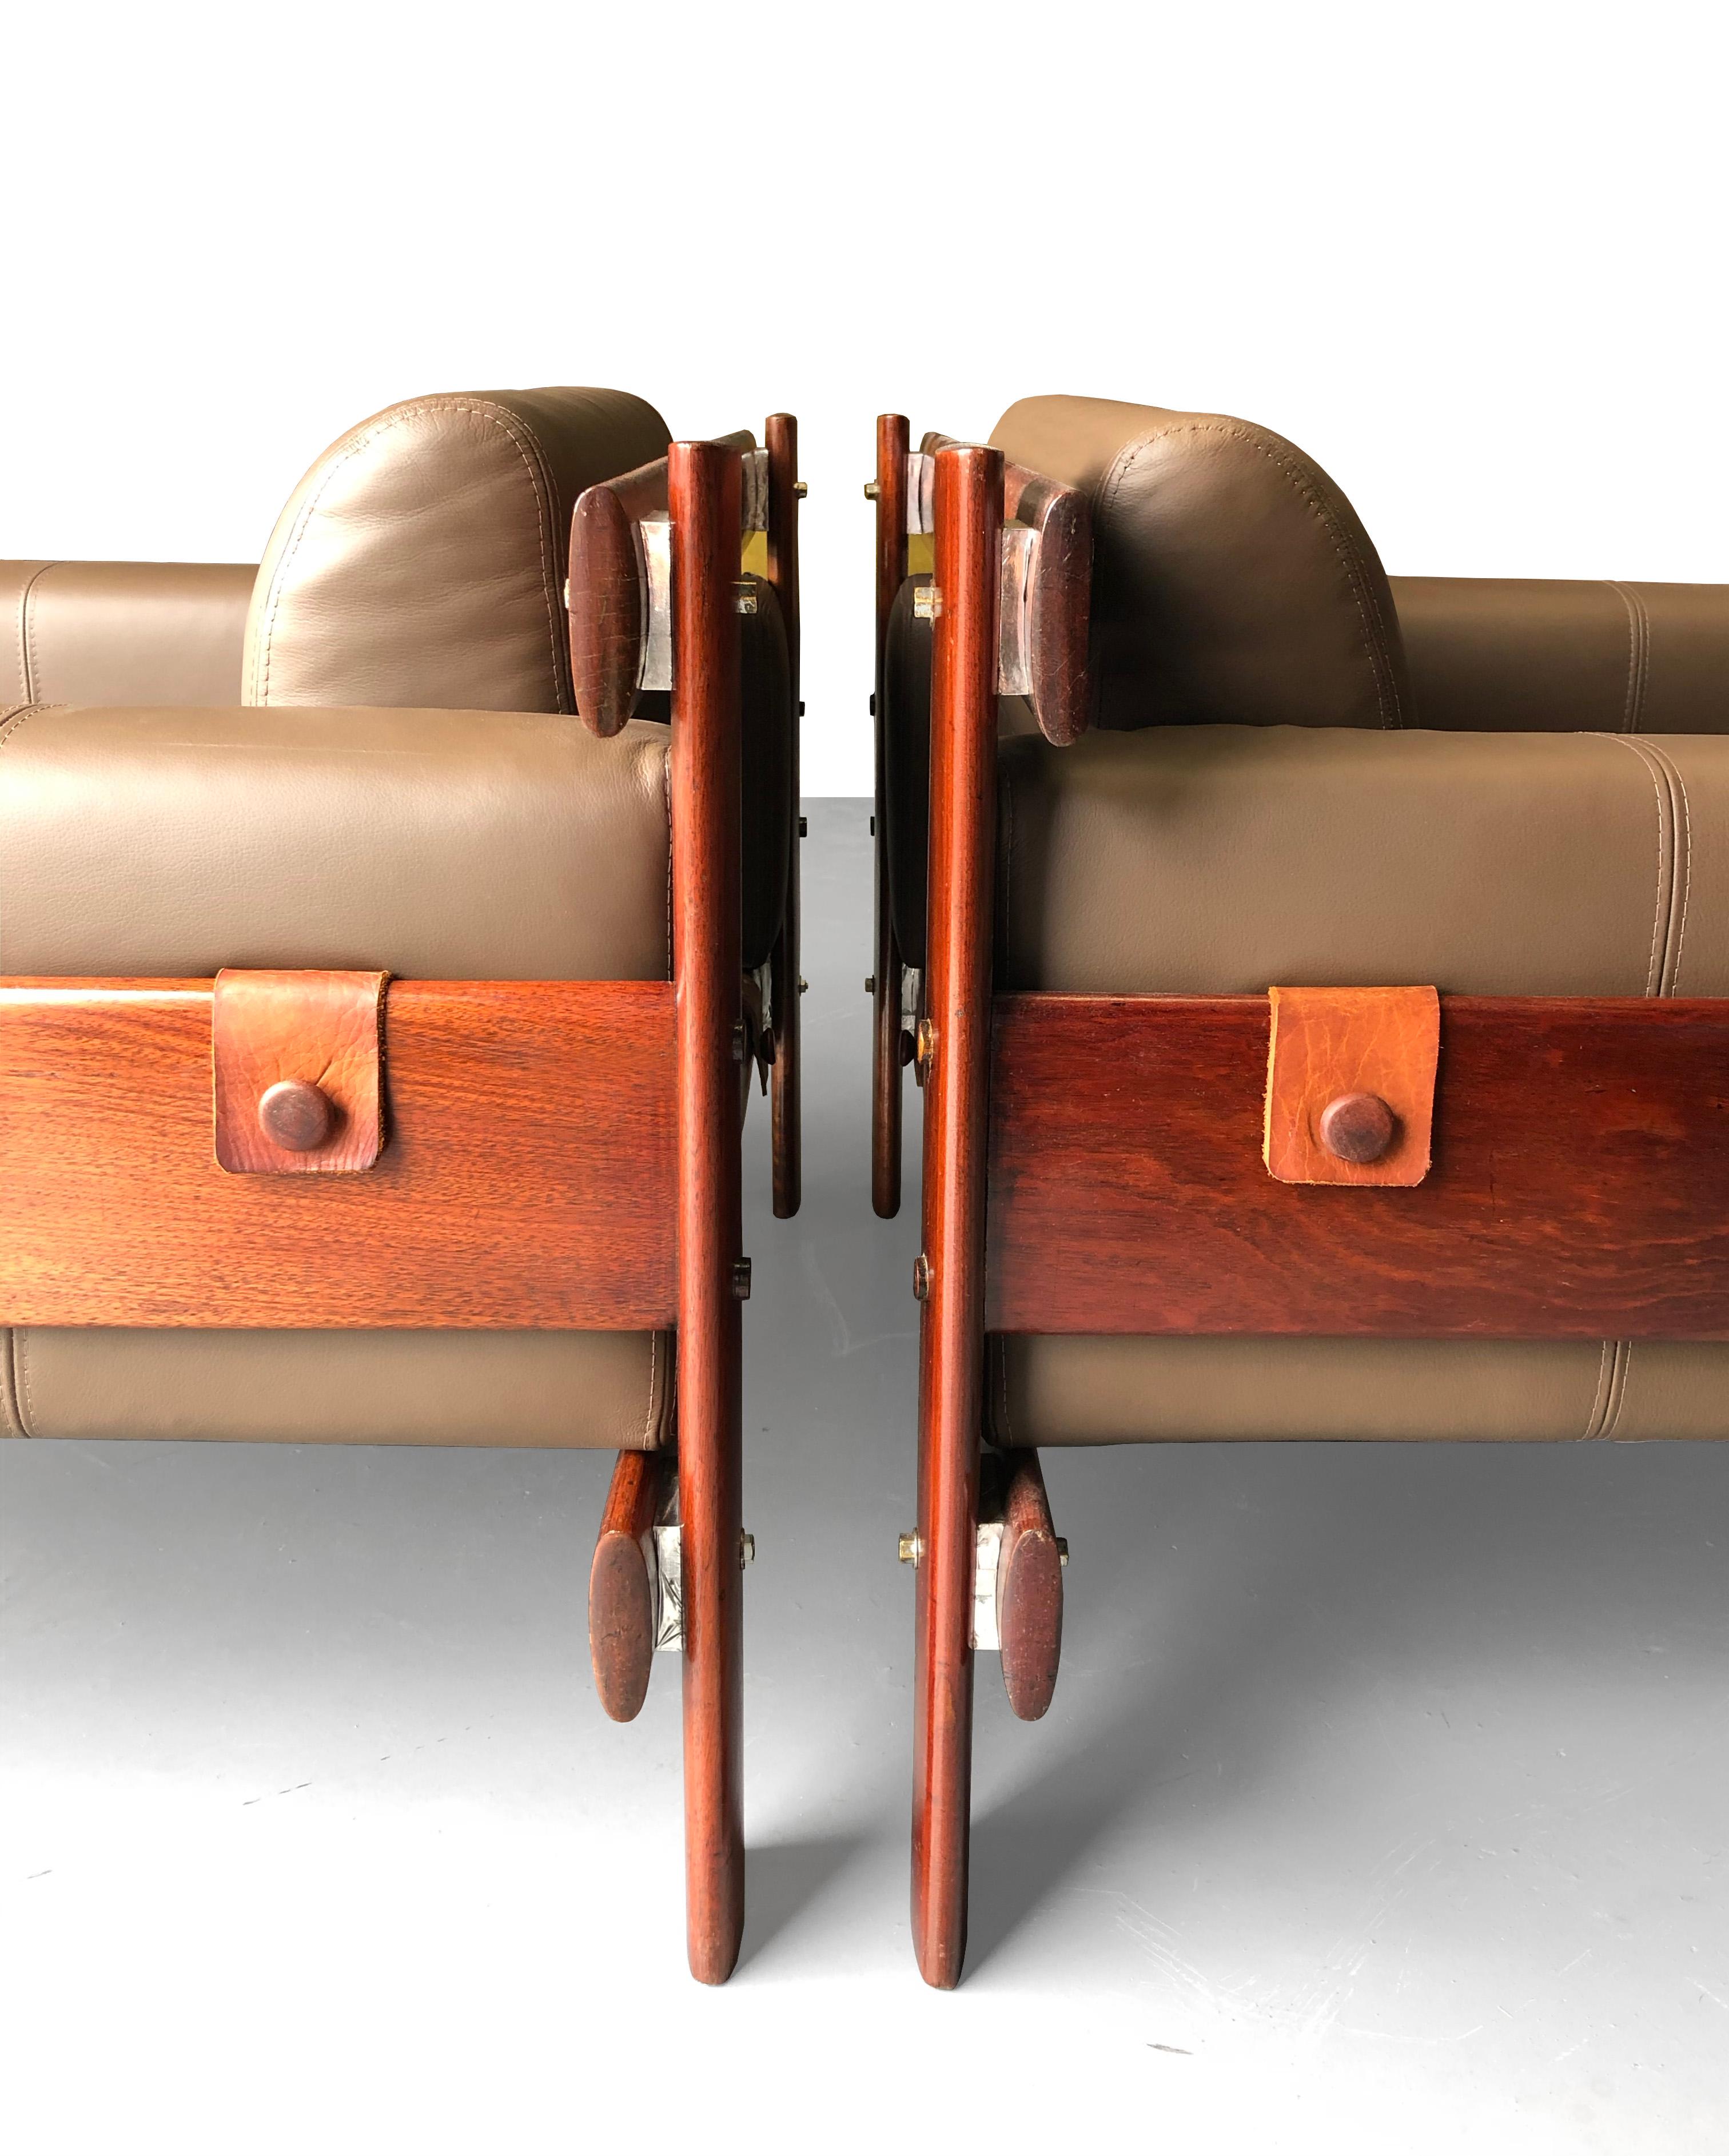 Modèle rare de fauteuil de Percival Lafer, notre étonnante paire de MP-51 a sa structure entièrement réalisée en bois massif de Jatobá - cerisier brésilien. 
La base du siège a été refaite avec de nouvelles sangles en cuir naturel. Ces sangles font